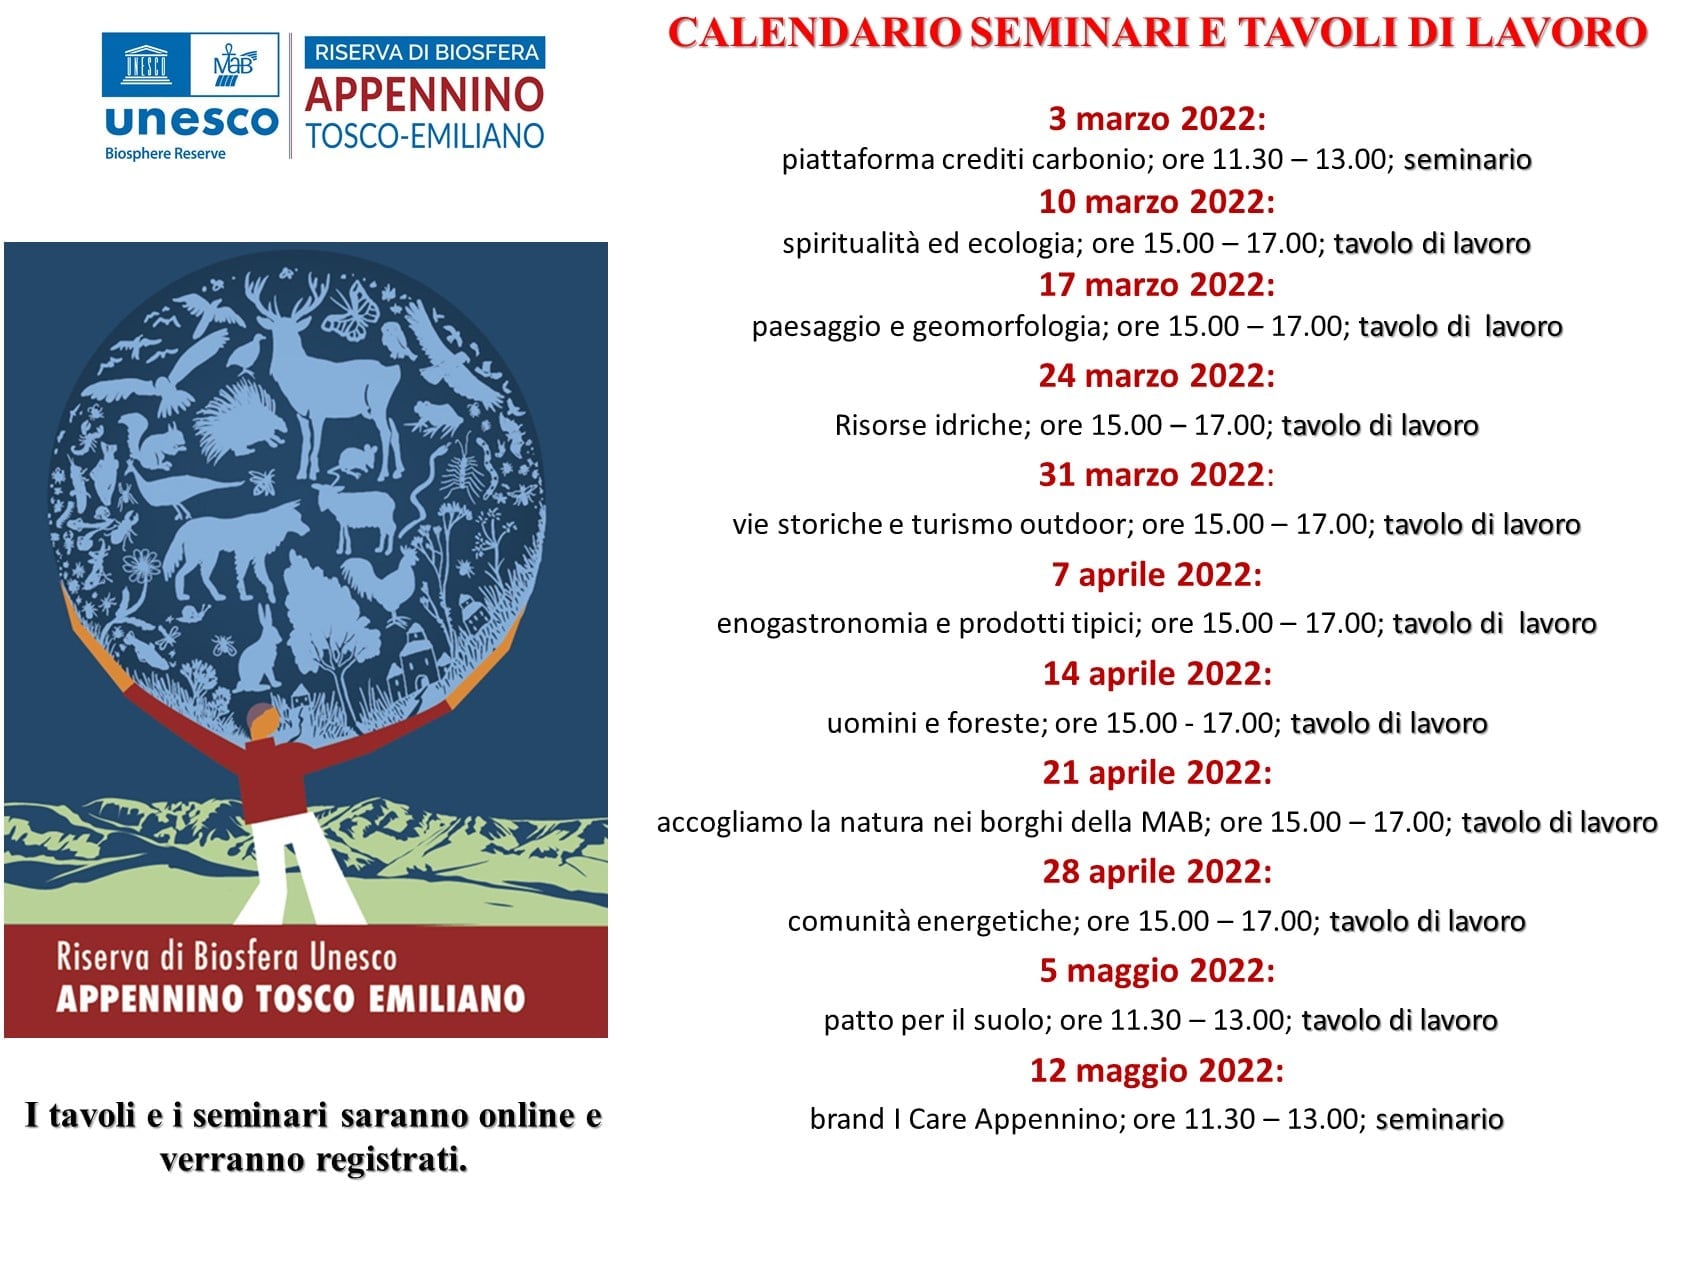 Ass. Il Ponte Calendario seminari e tavoli di lavoro Appennino Tosco Emiliano.jpg